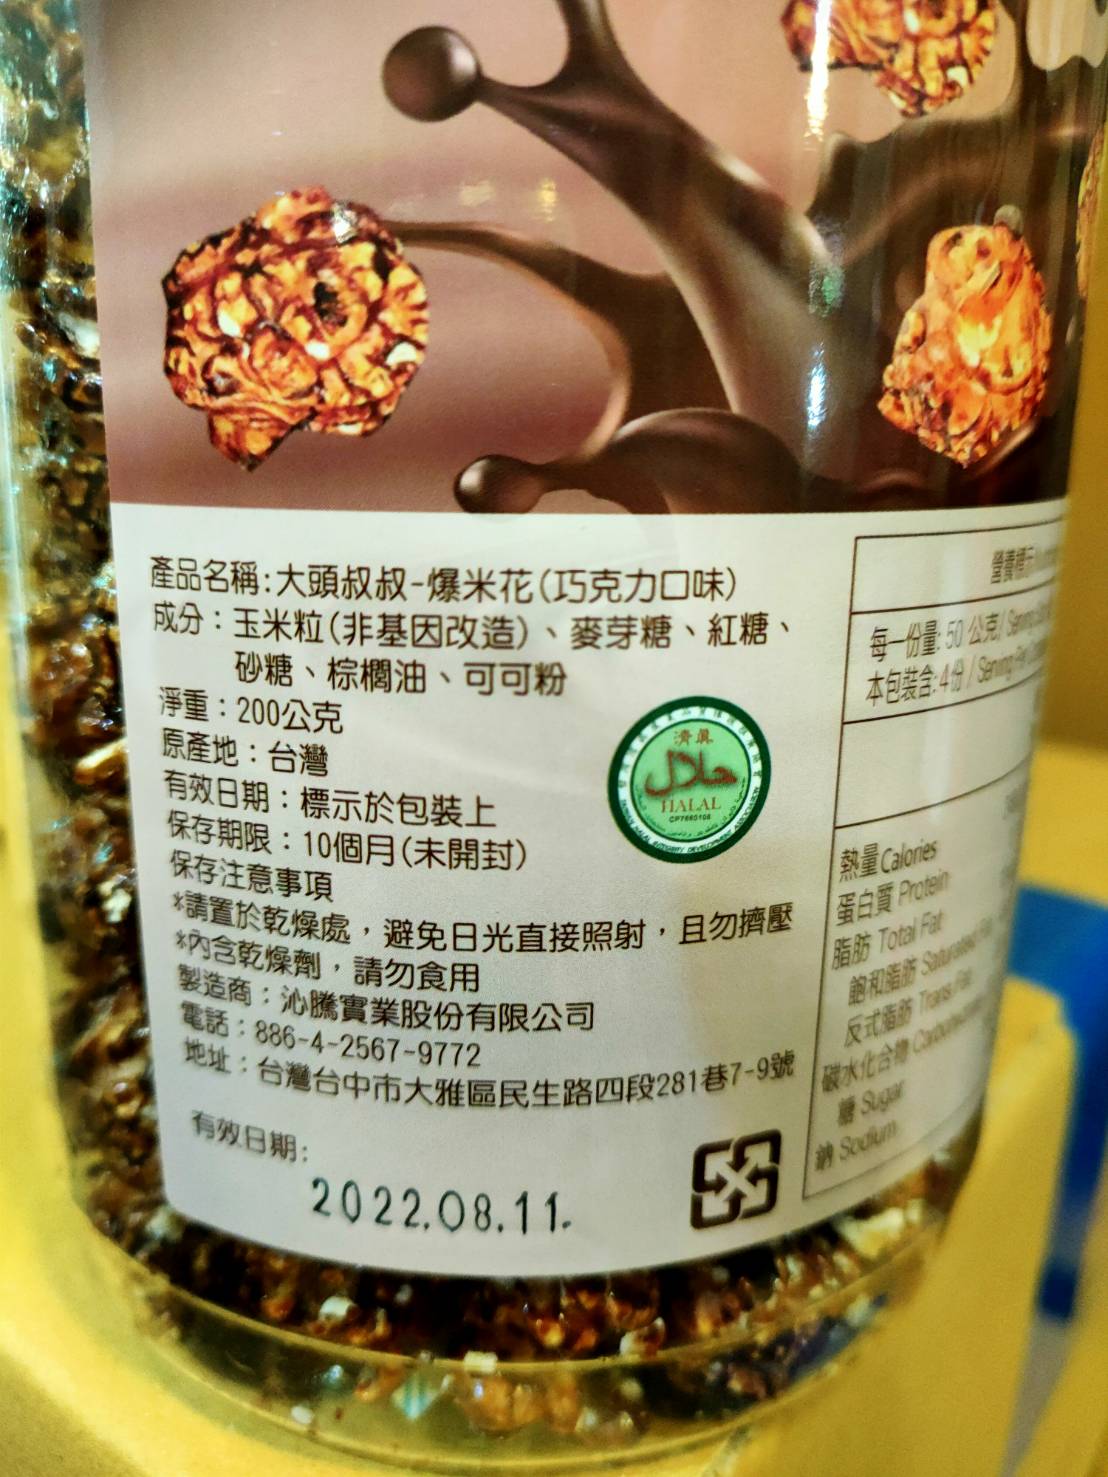 大頭叔叔爆米花聖誕限定(200g) 玉米濃湯/起司/焦糖/原味/巧克力